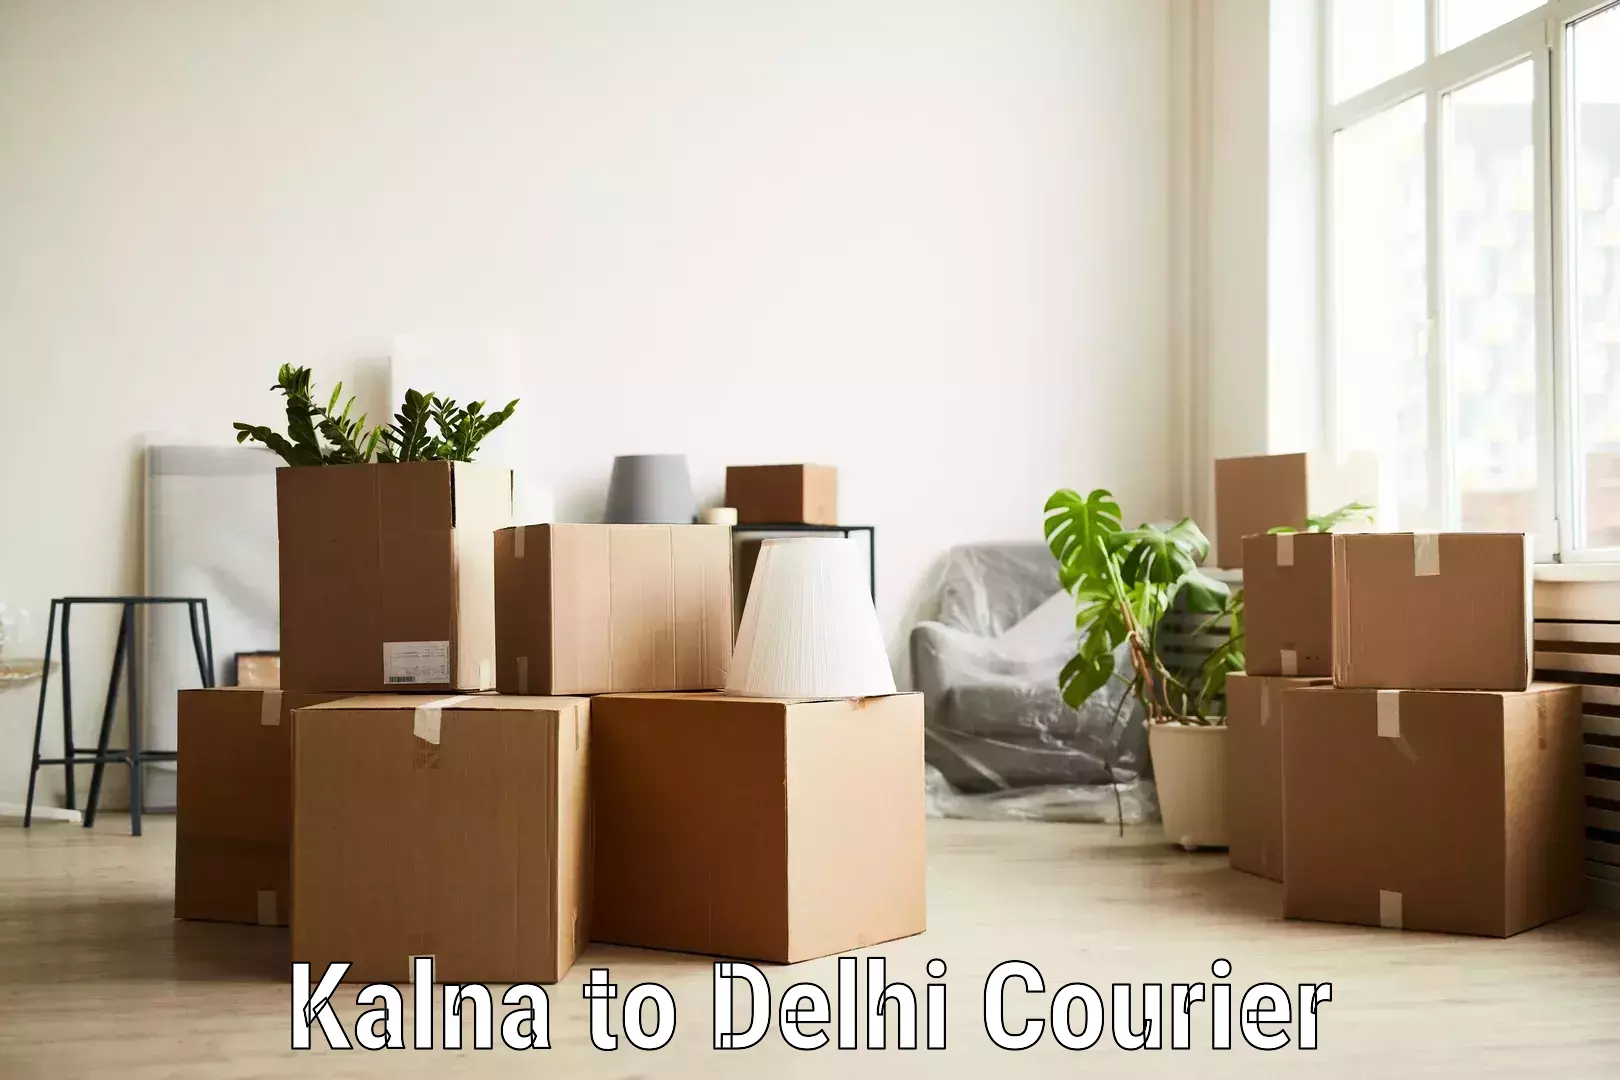 Comprehensive logistics solutions Kalna to University of Delhi